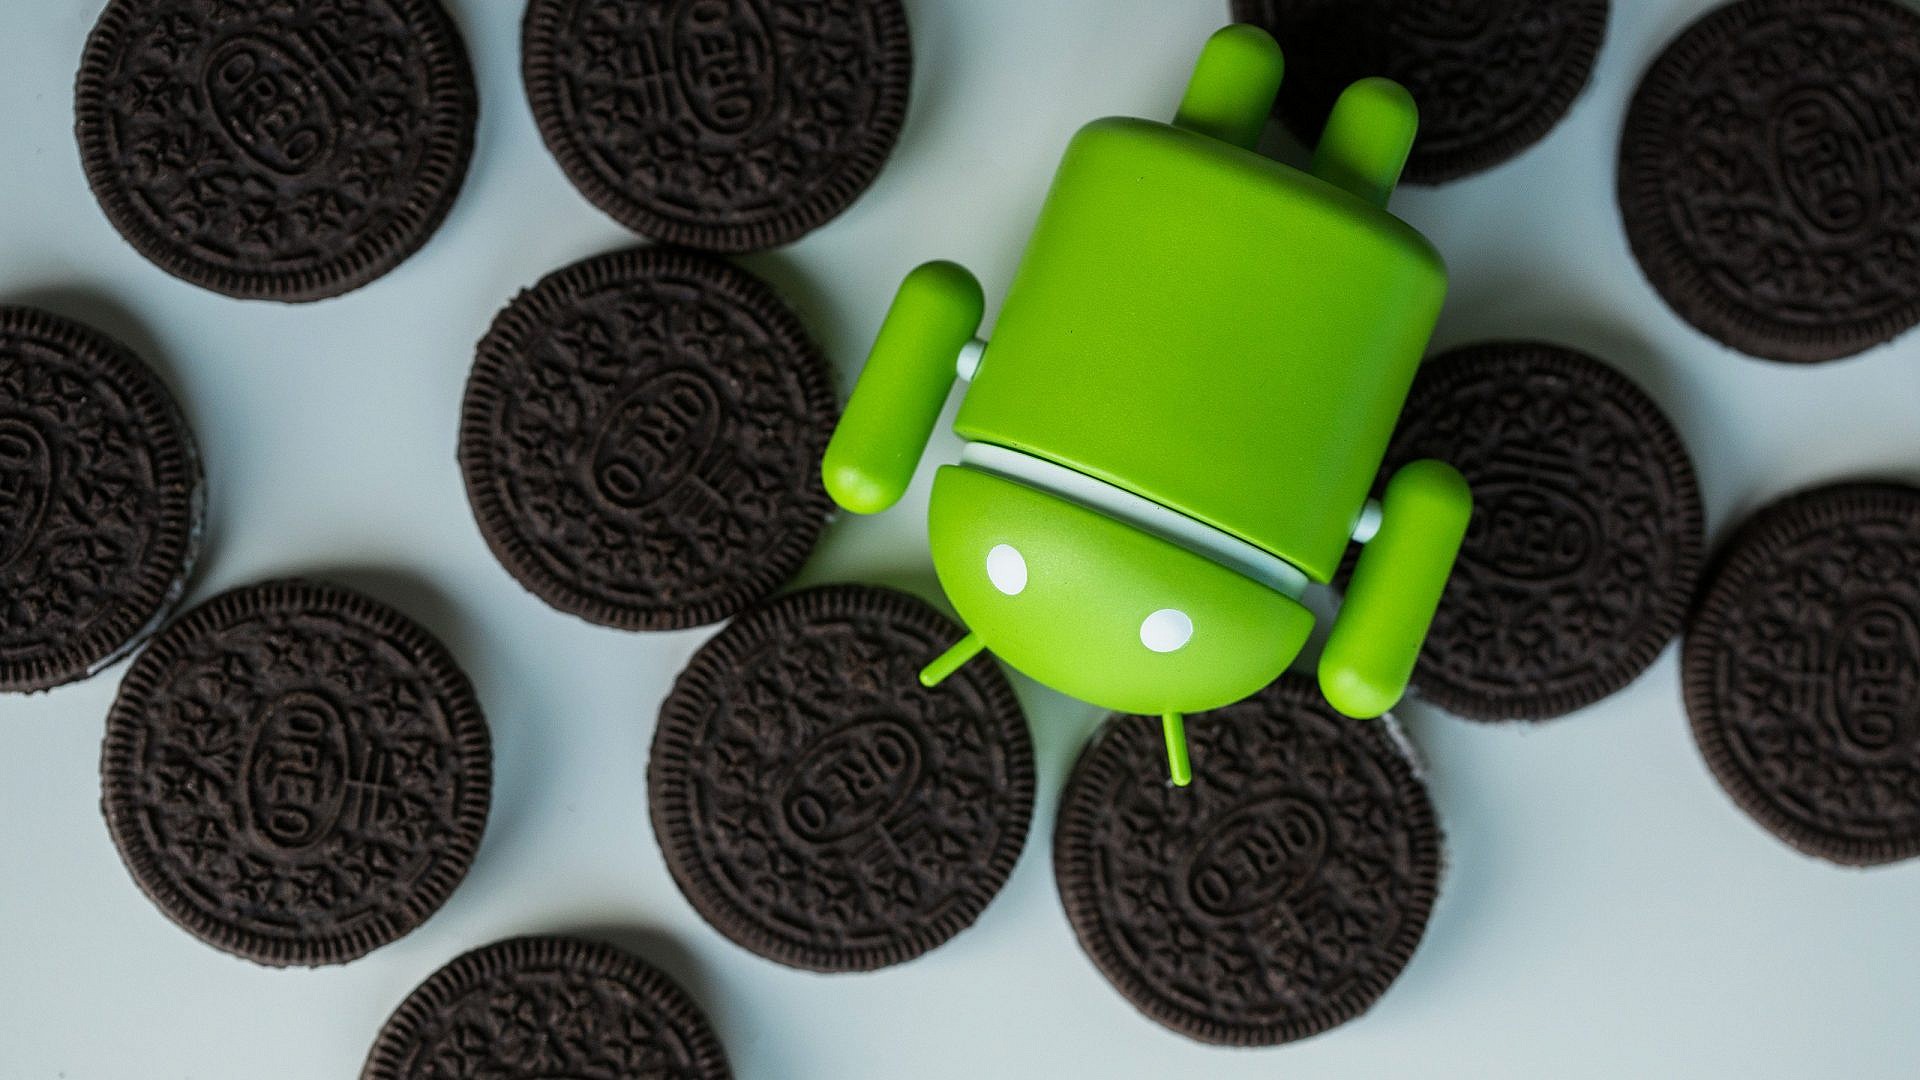 Google เปิดตัว Android O รุ่นใหม่ล่าสุดอย่างเป็นทางการพร้อมฟีเจอร์ใหม่ๆ เพียบ!